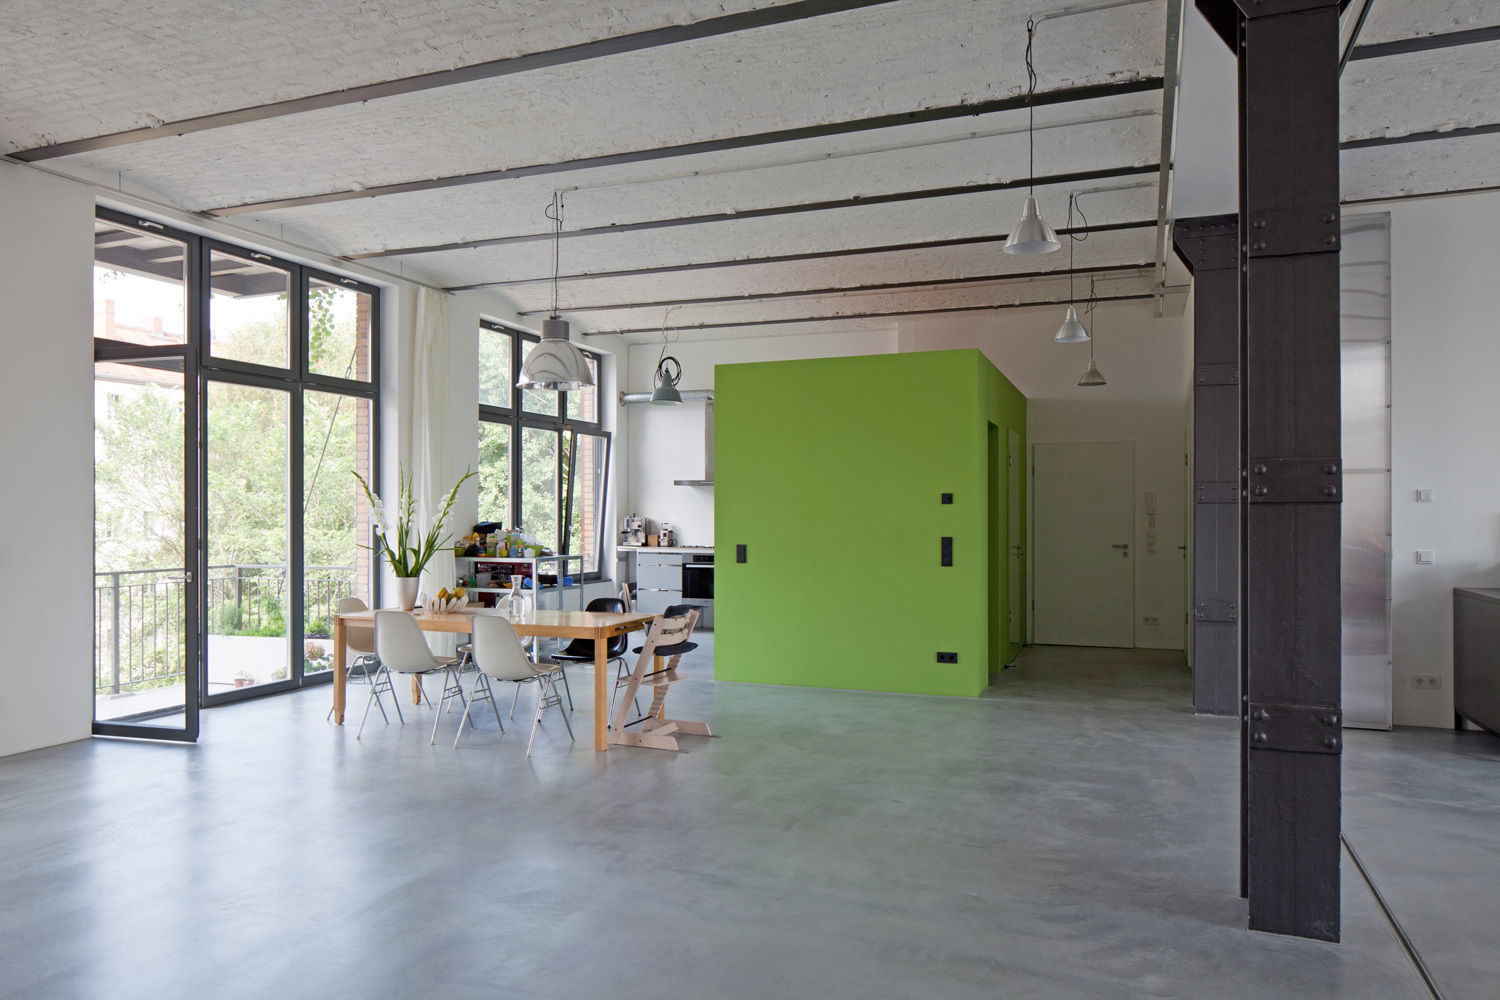 Wohn- und Büroloft, studioinges Architektur und Städtebau studioinges Architektur und Städtebau Minimalist dining room